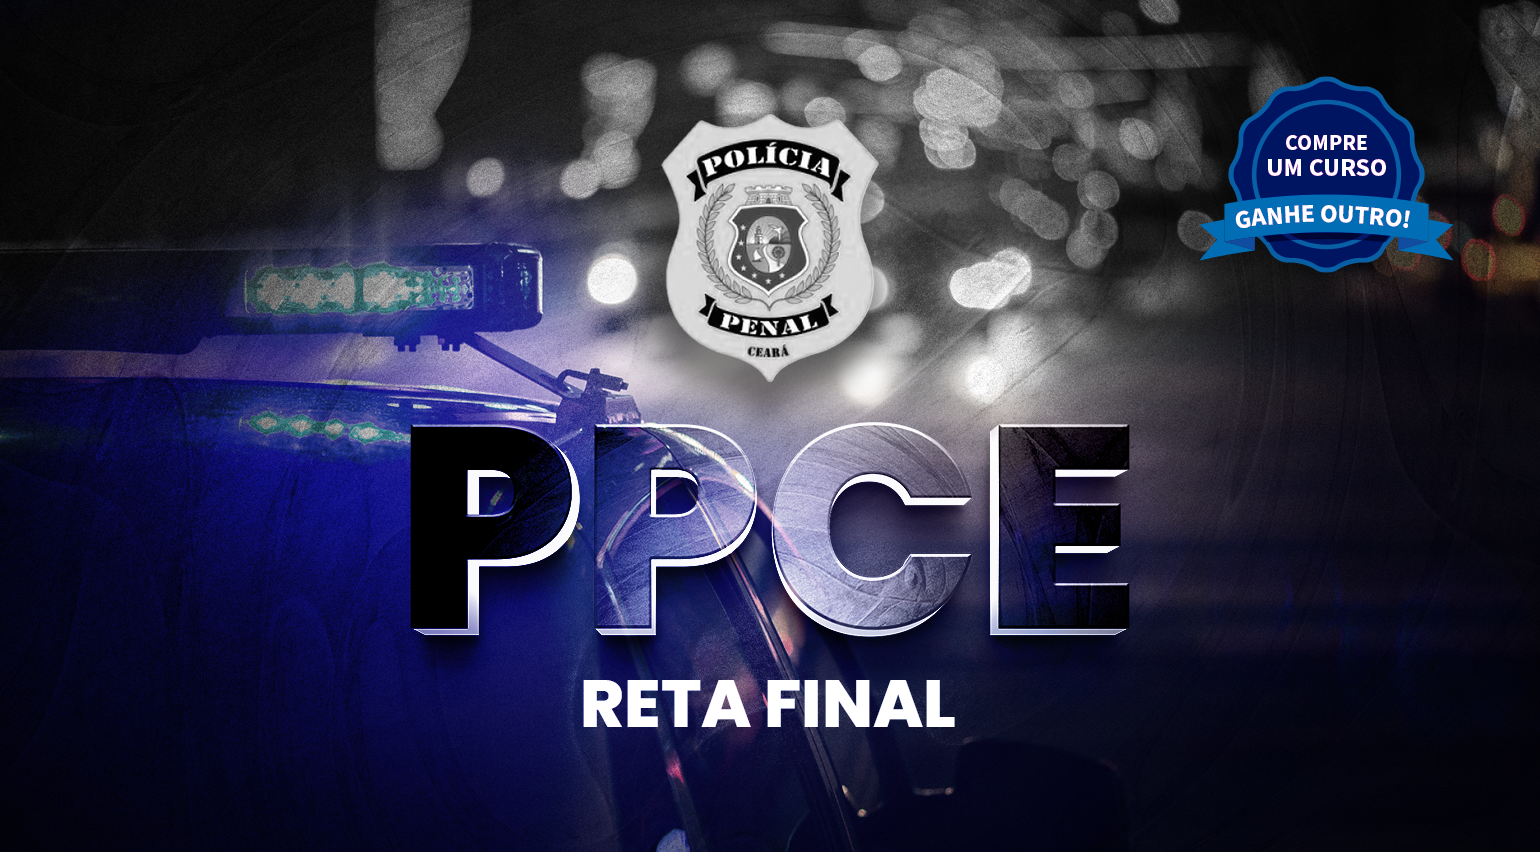 Reta Final - PPCE